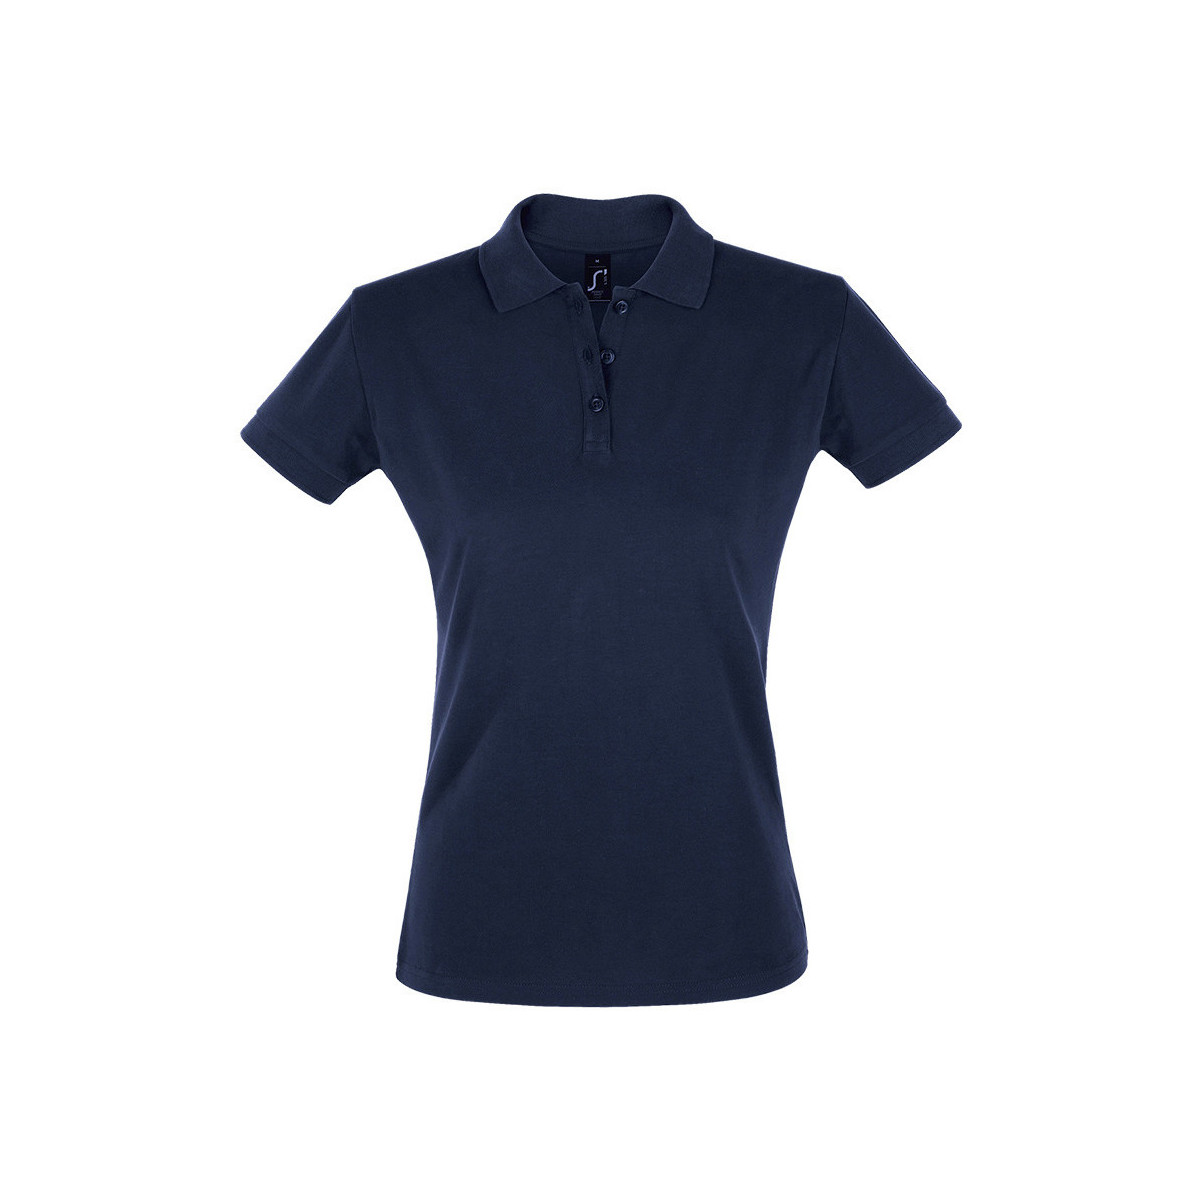 textil Dame Polo-t-shirts m. korte ærmer Sols PERFECT COLORS WOMEN Blå